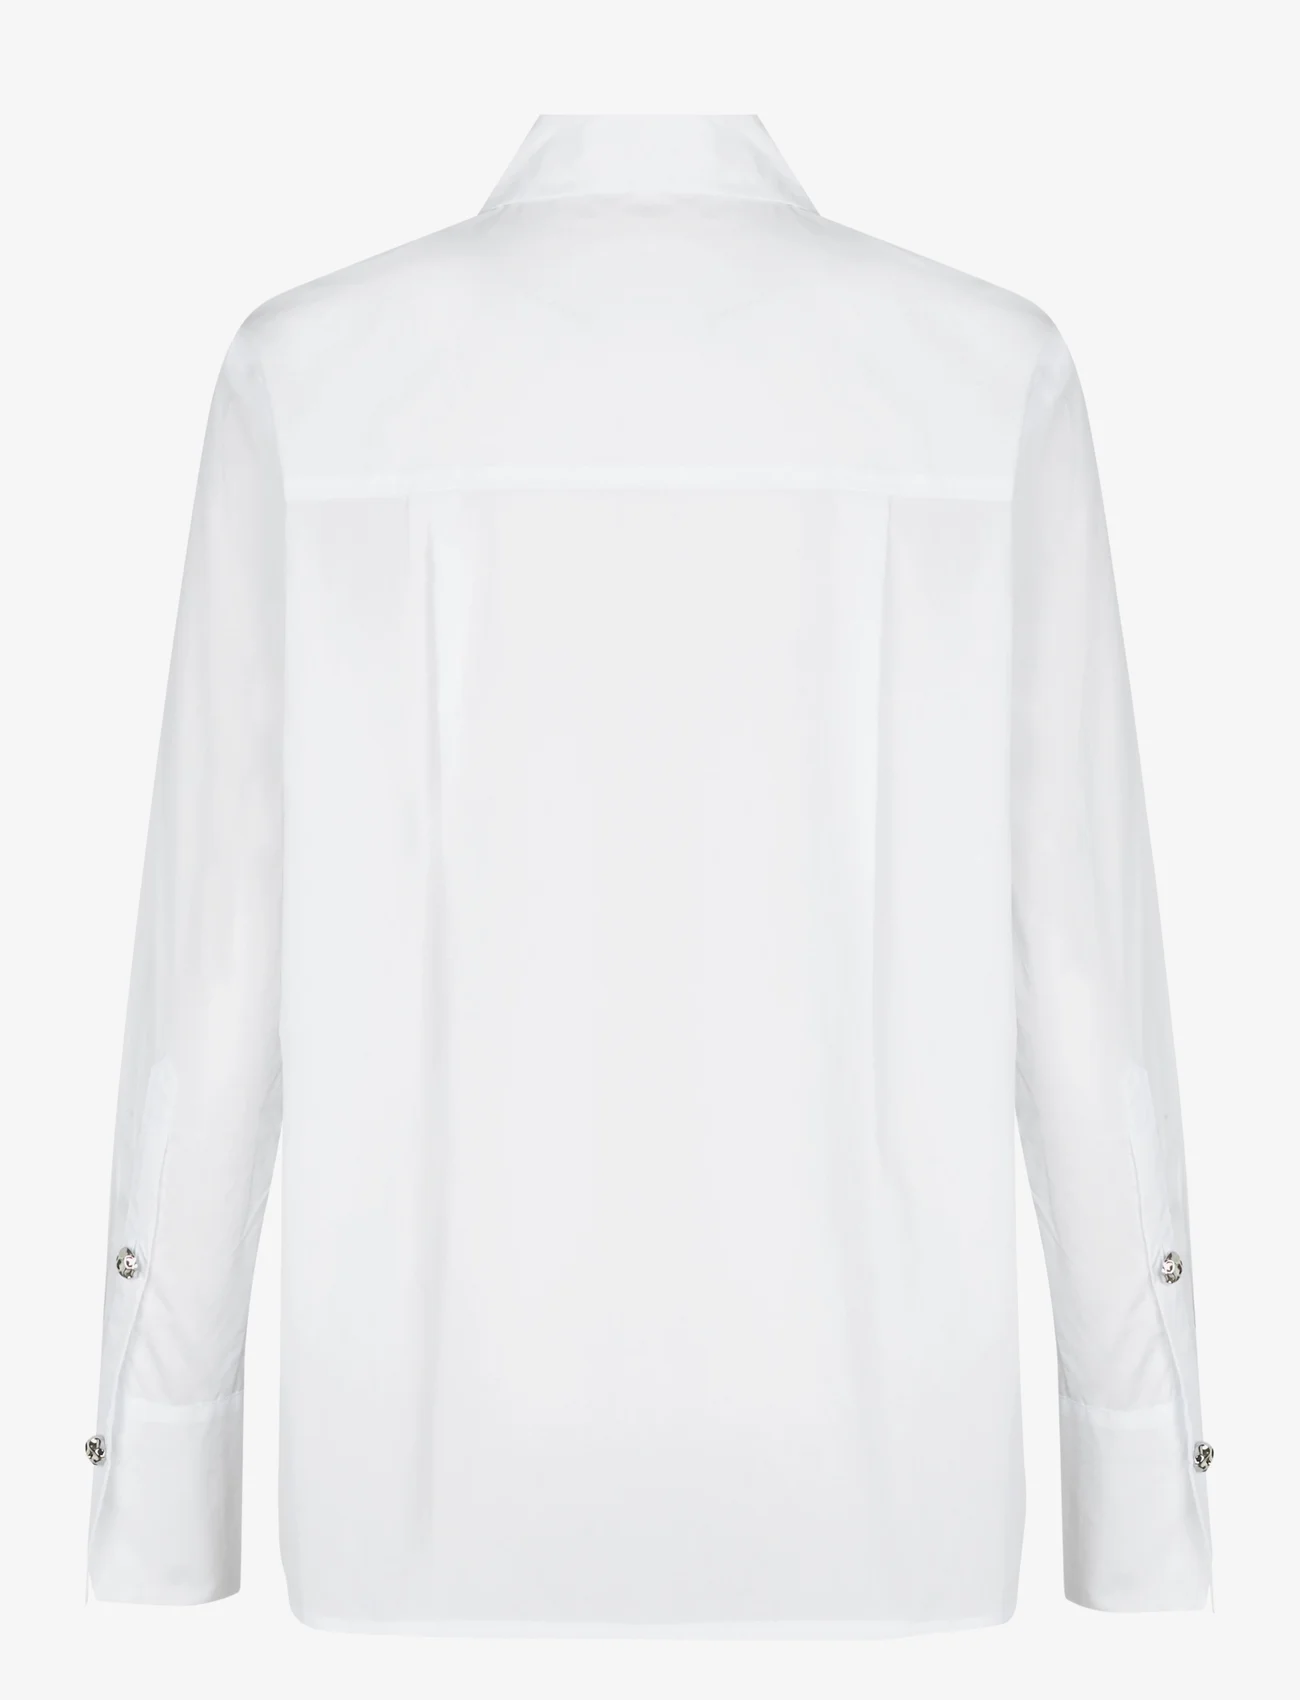 Custommade - Bri Solid - pitkähihaiset paidat - 001 bright white - 1